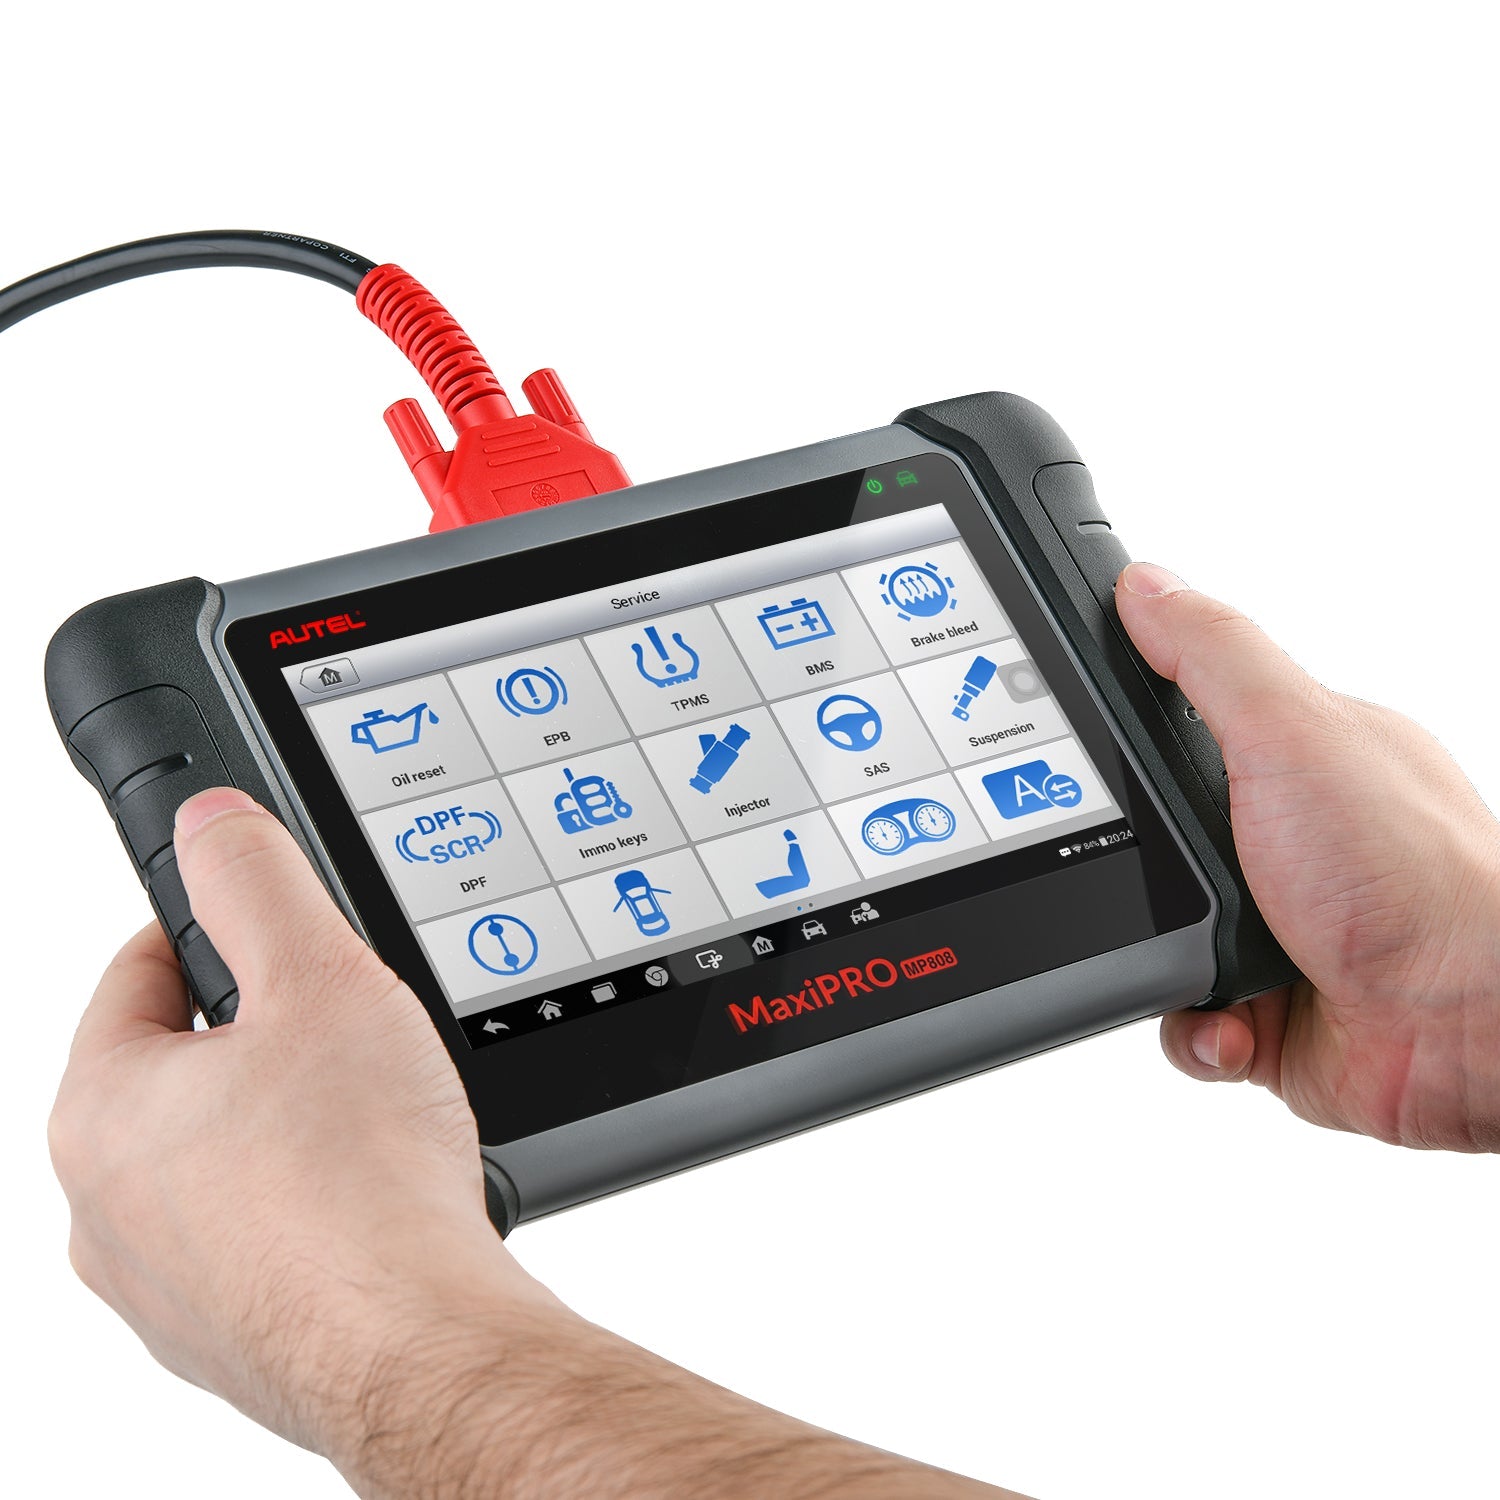 Autel Maxipro MP808s Kit Bi-Directional Automotive Diagnostic Scan